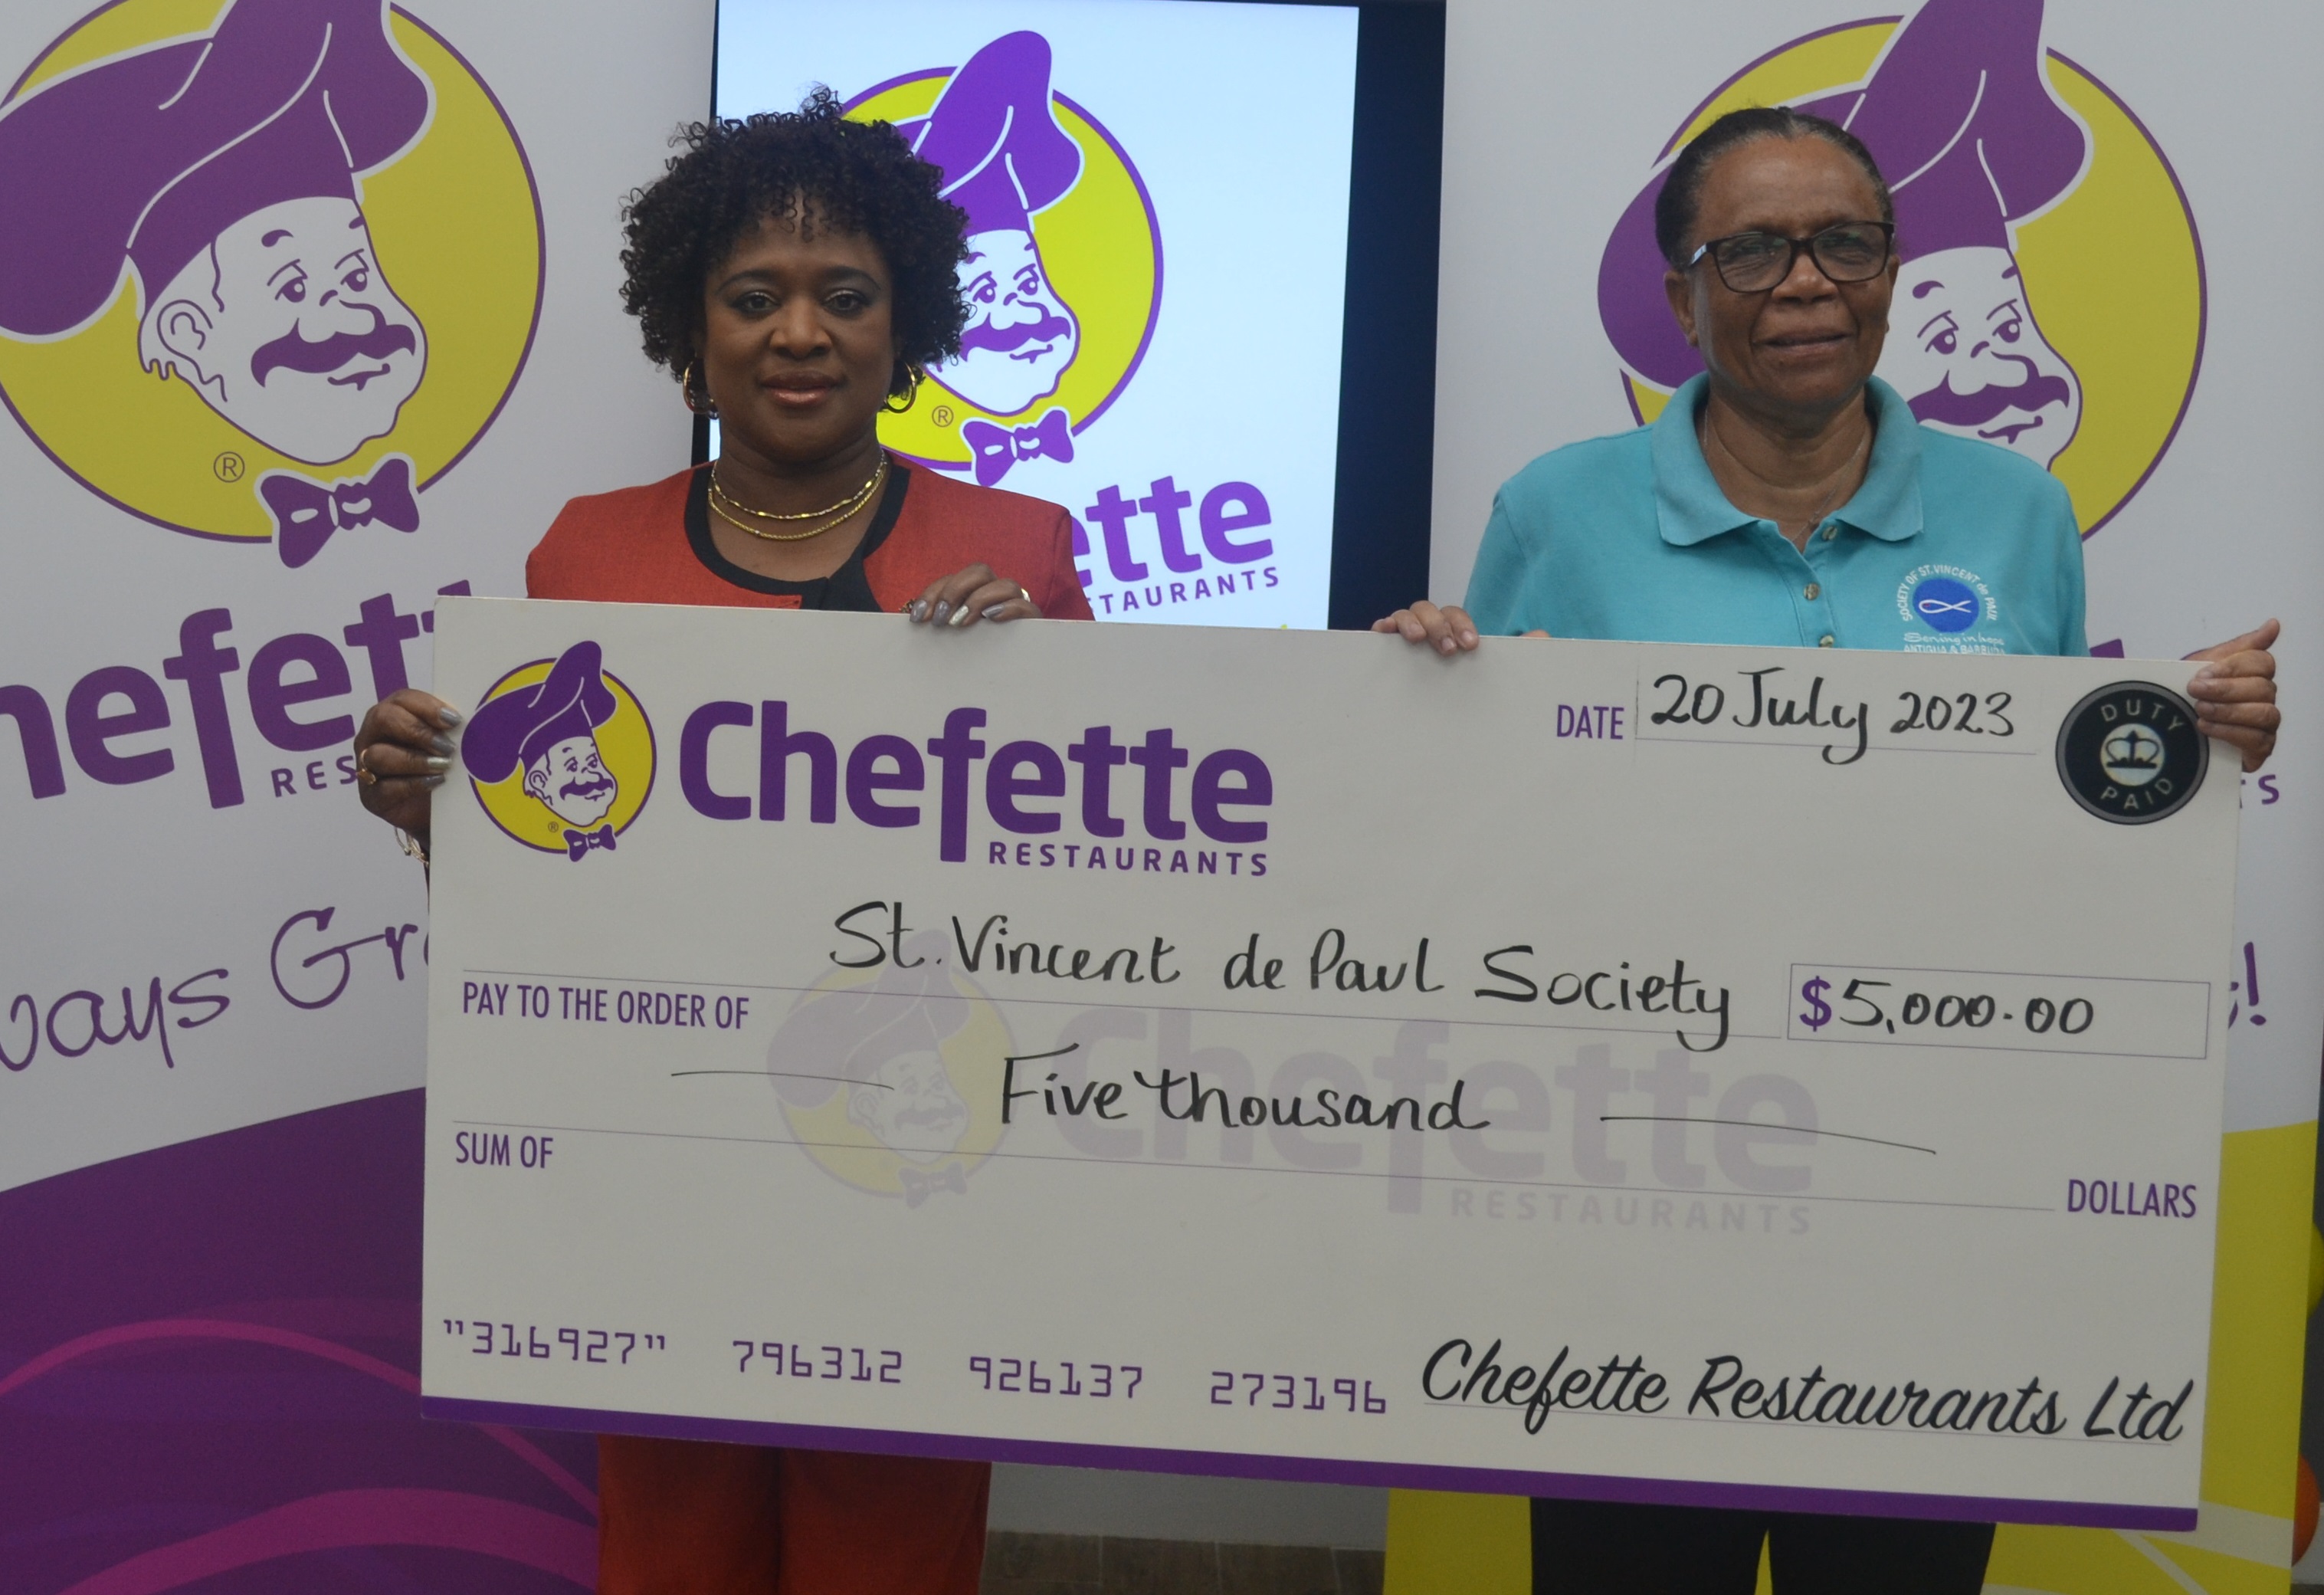 St. Vincent de Paul receives donation from Chefette Restaurants Ltd